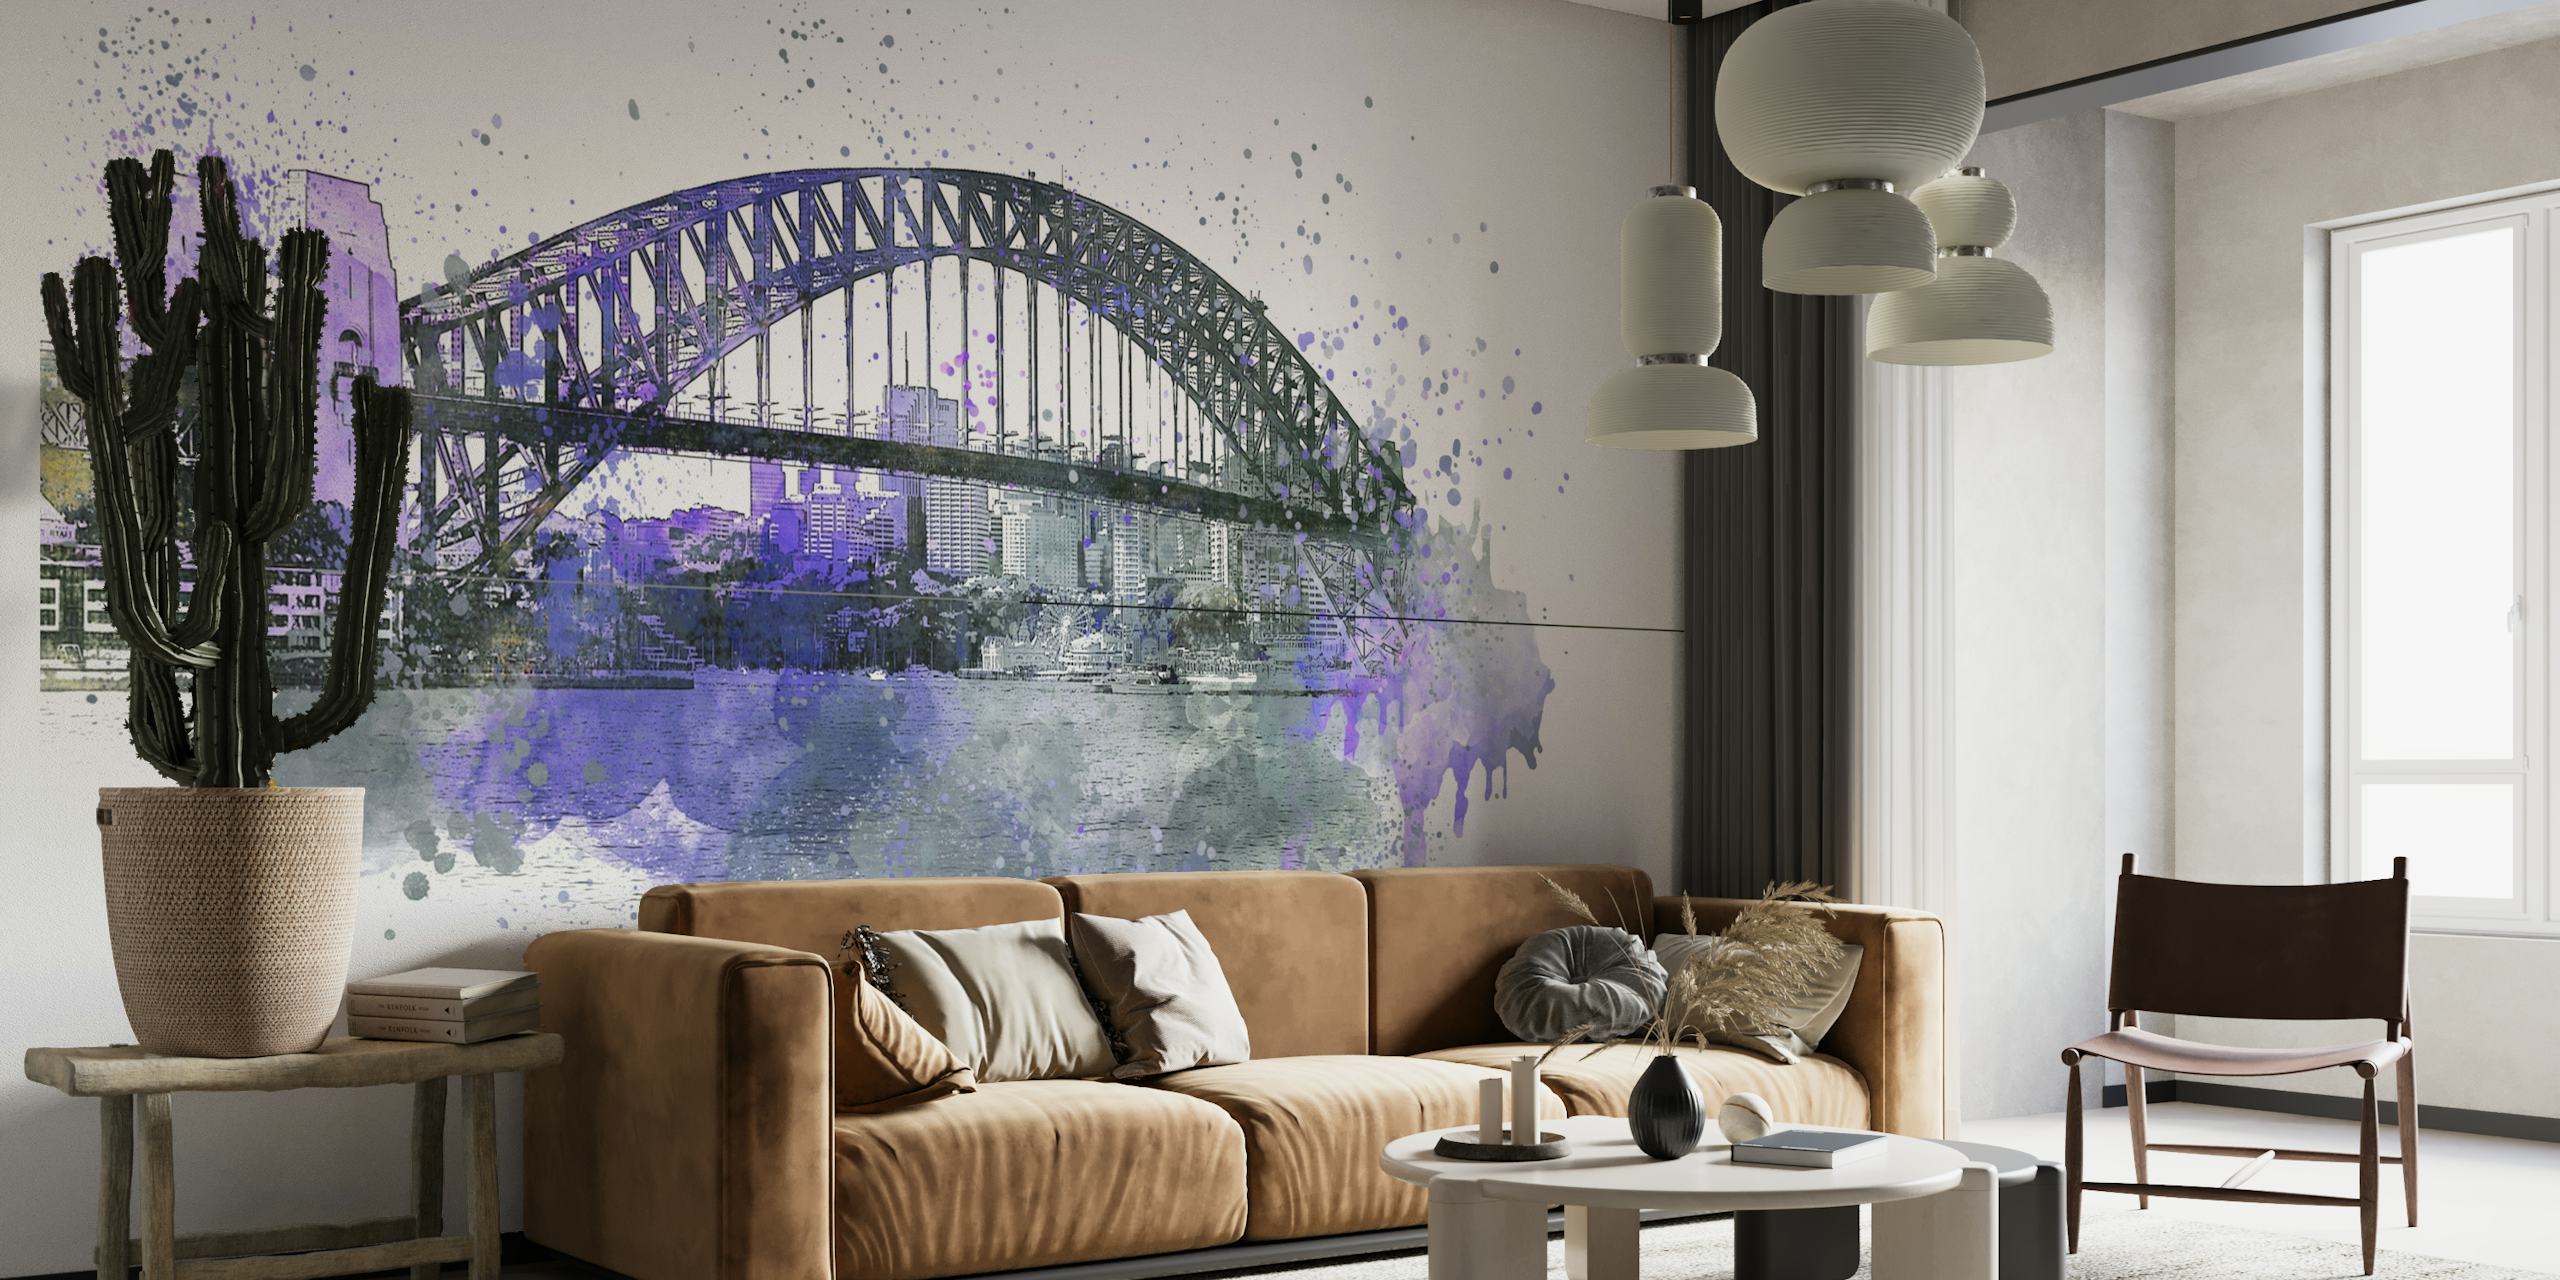 Rappresentazione murale artistica dell'acquerello del Sydney Harbour Bridge nei toni viola e grigi